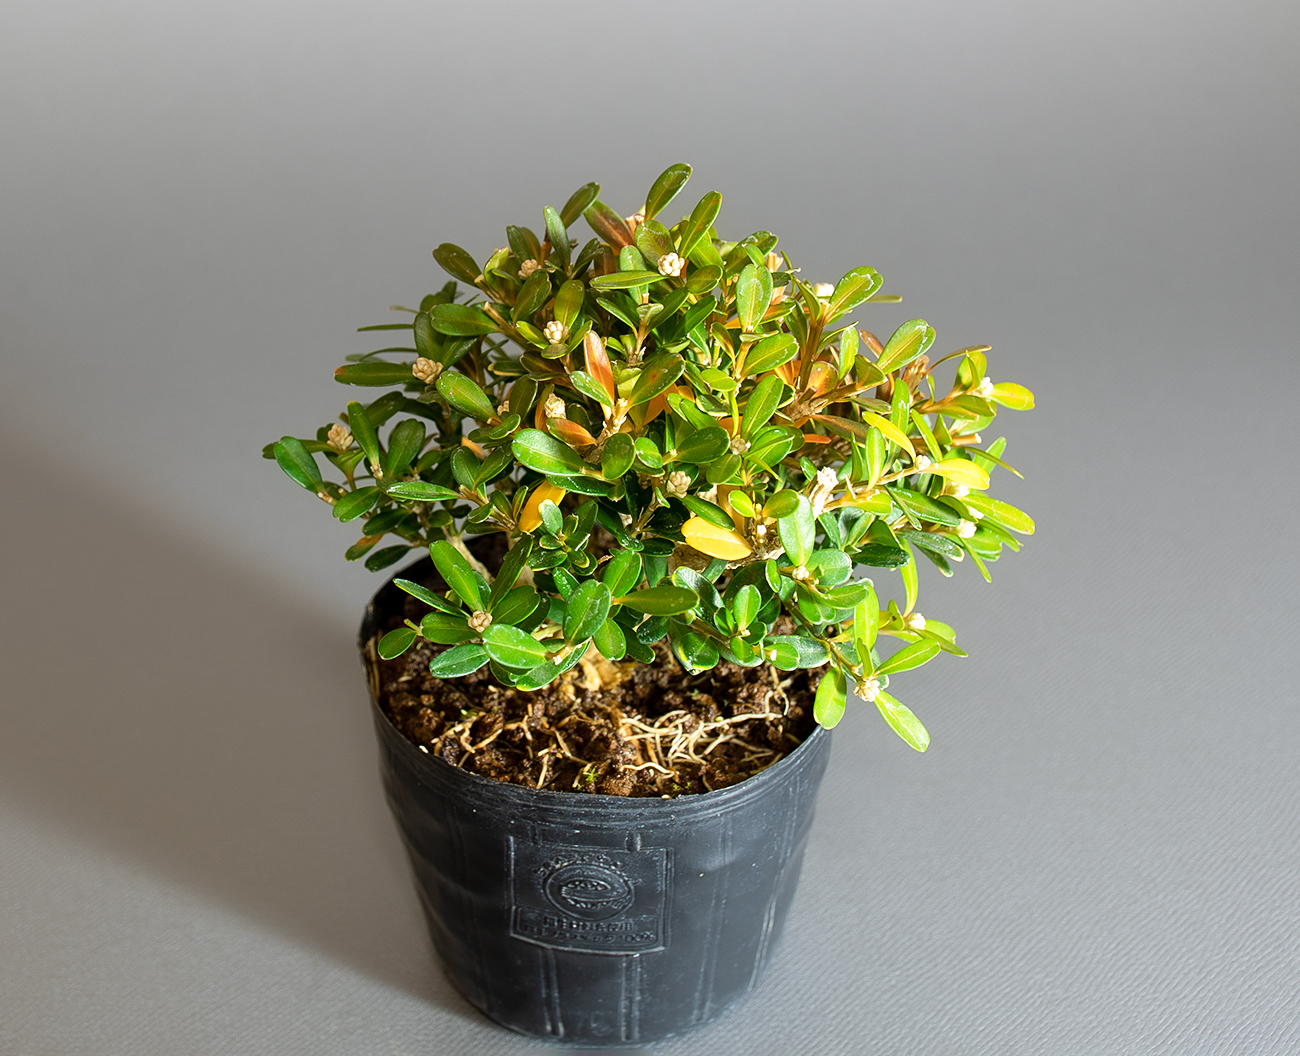 タイワンツゲ-C1（たいわんつげ・台湾黄楊）実もの盆栽の上側から見た景色・Buxus microphylla var.japonica bonsai